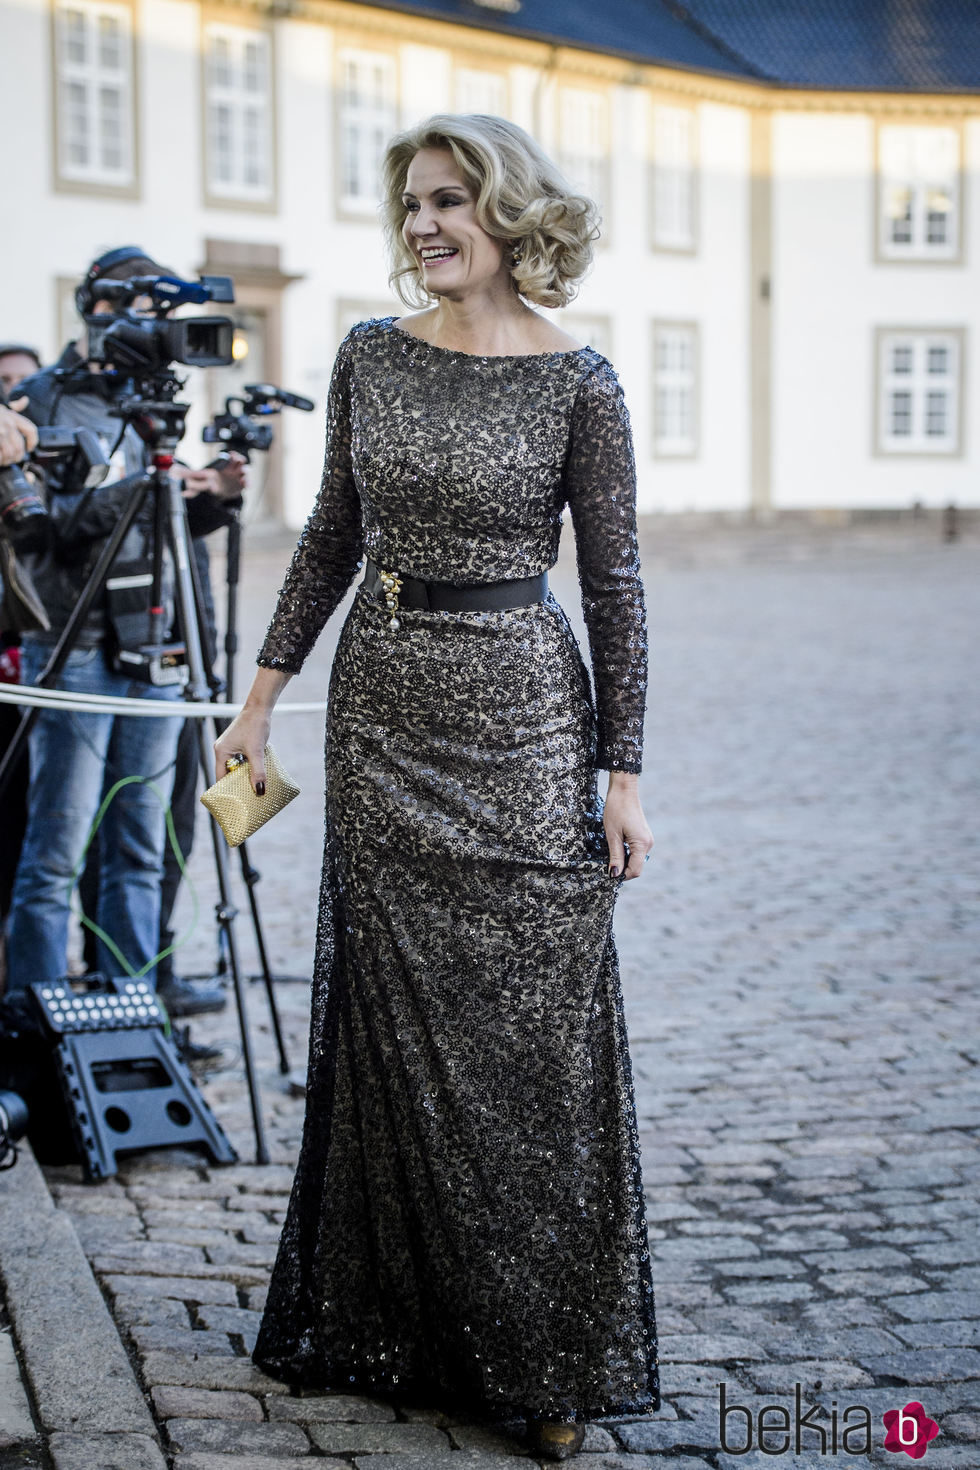 Helle Thorning-Schmidt en la cena de gala por el 75 cumpleaños de la Reina Margarita de Dinamarca